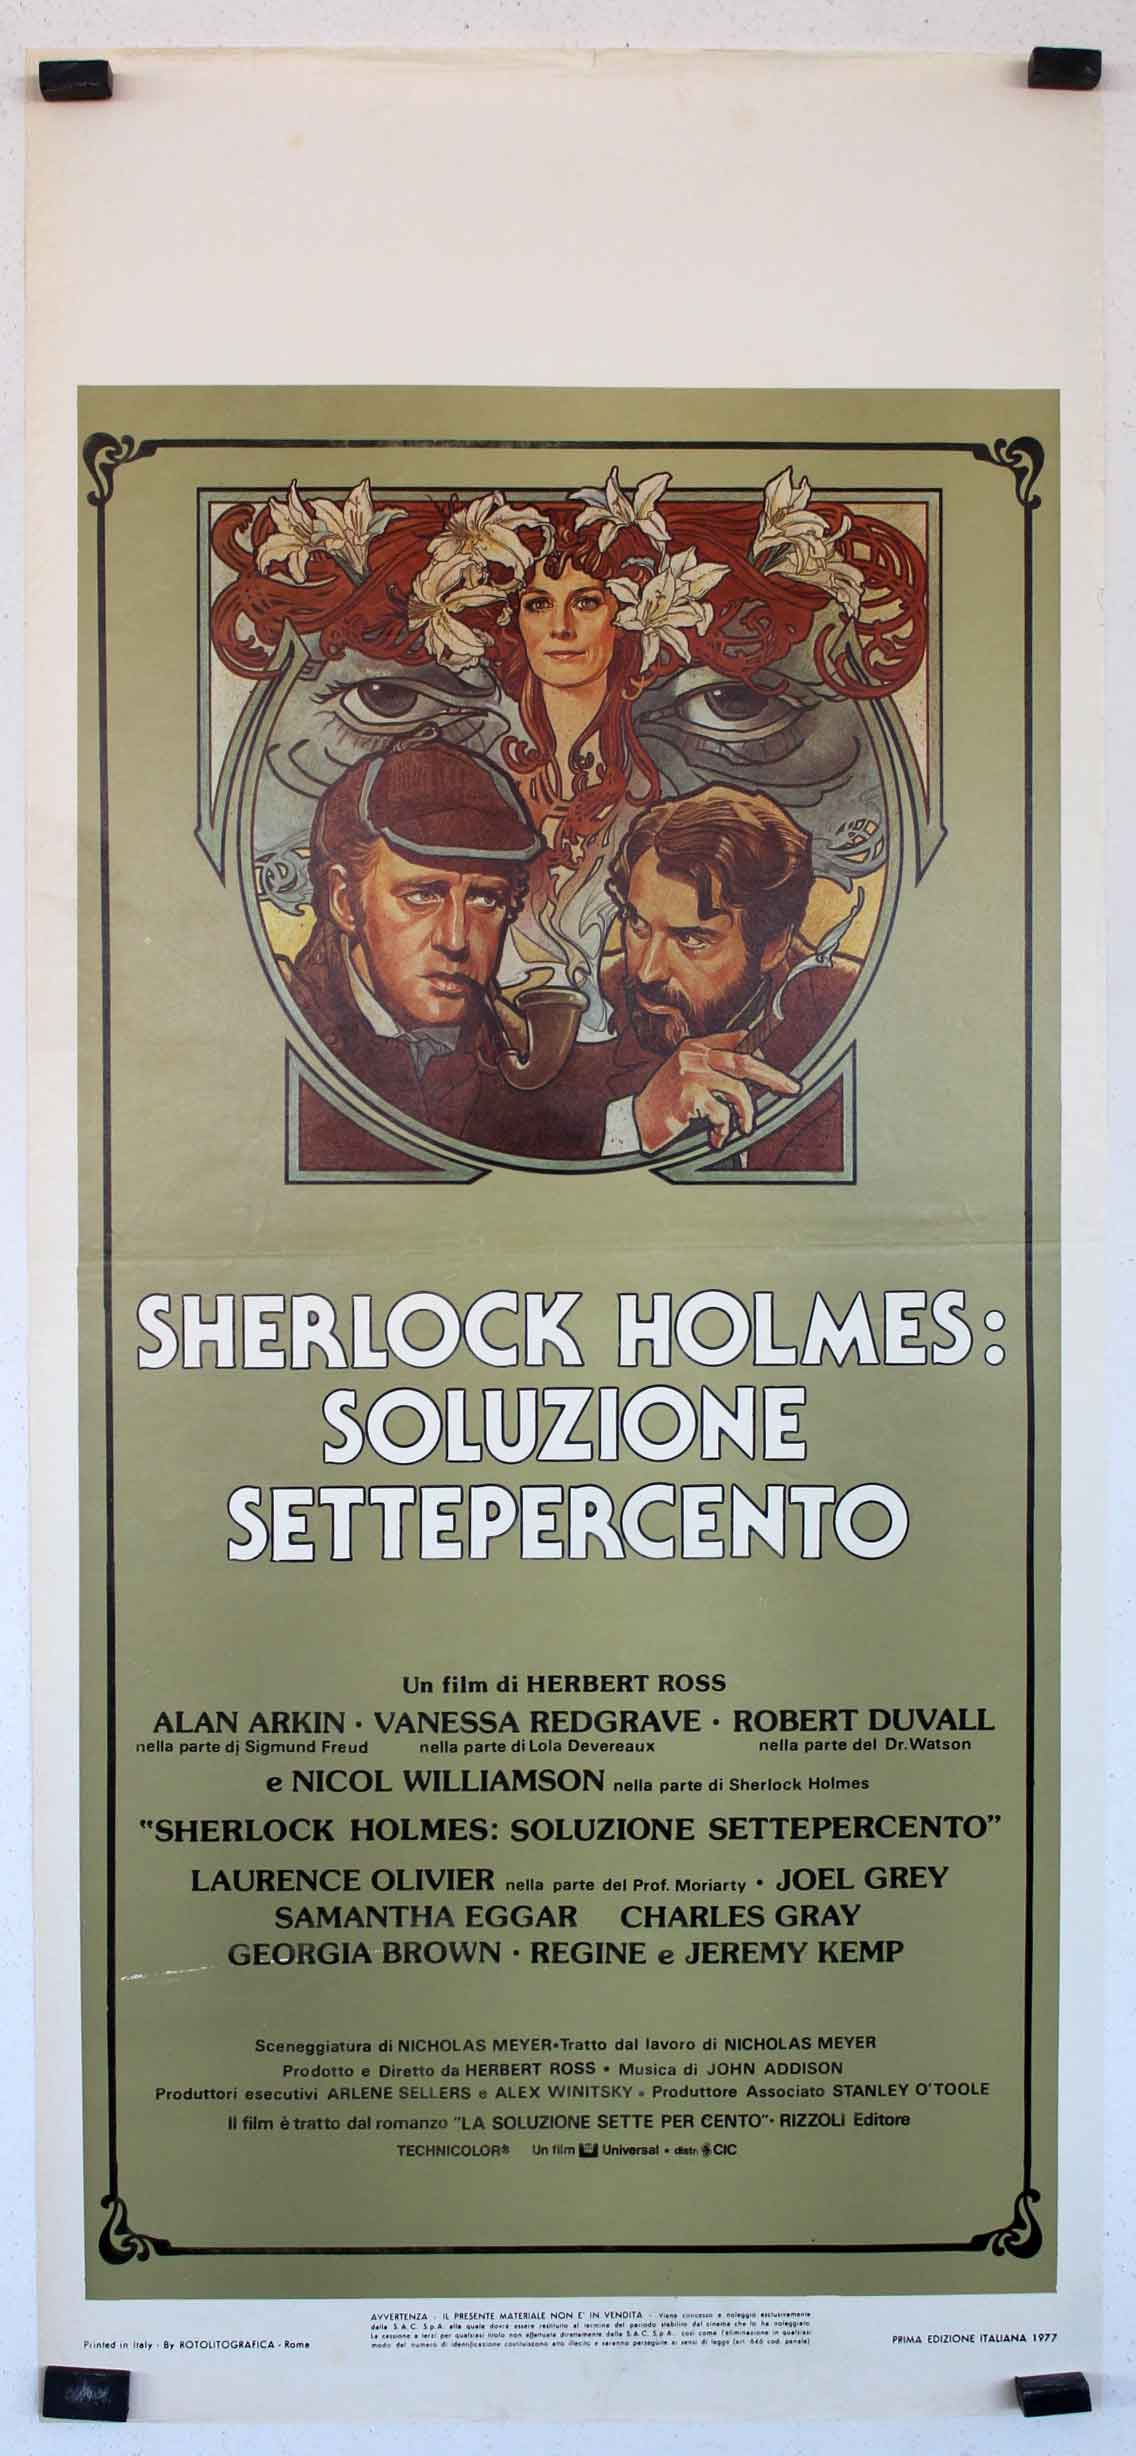 SHERLOCK HOLMES: SOLUZIONE SETTEPERCENTO